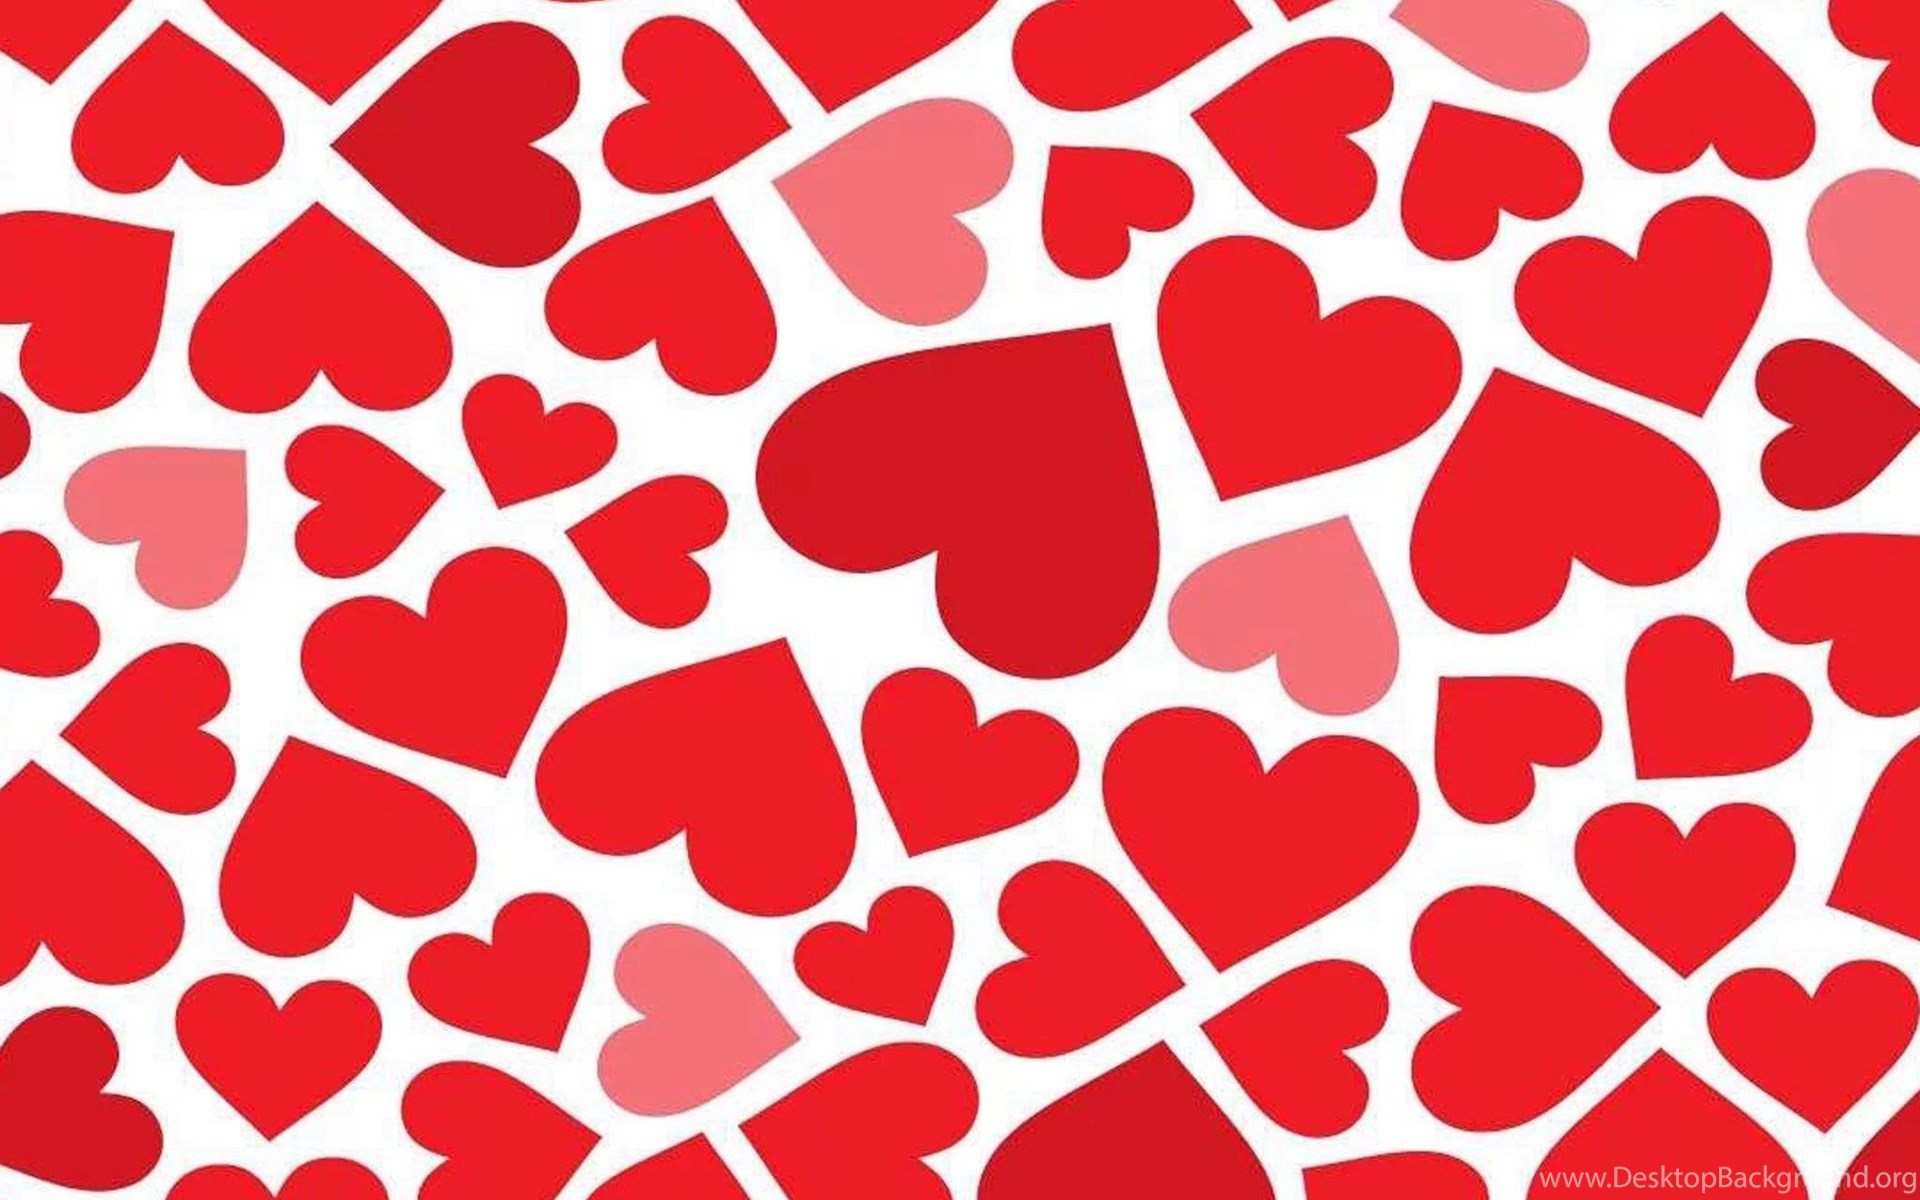 iPad Wallpaper Red Heart Pattern Love, New IPad, iPad iPad 4. Desktop Background